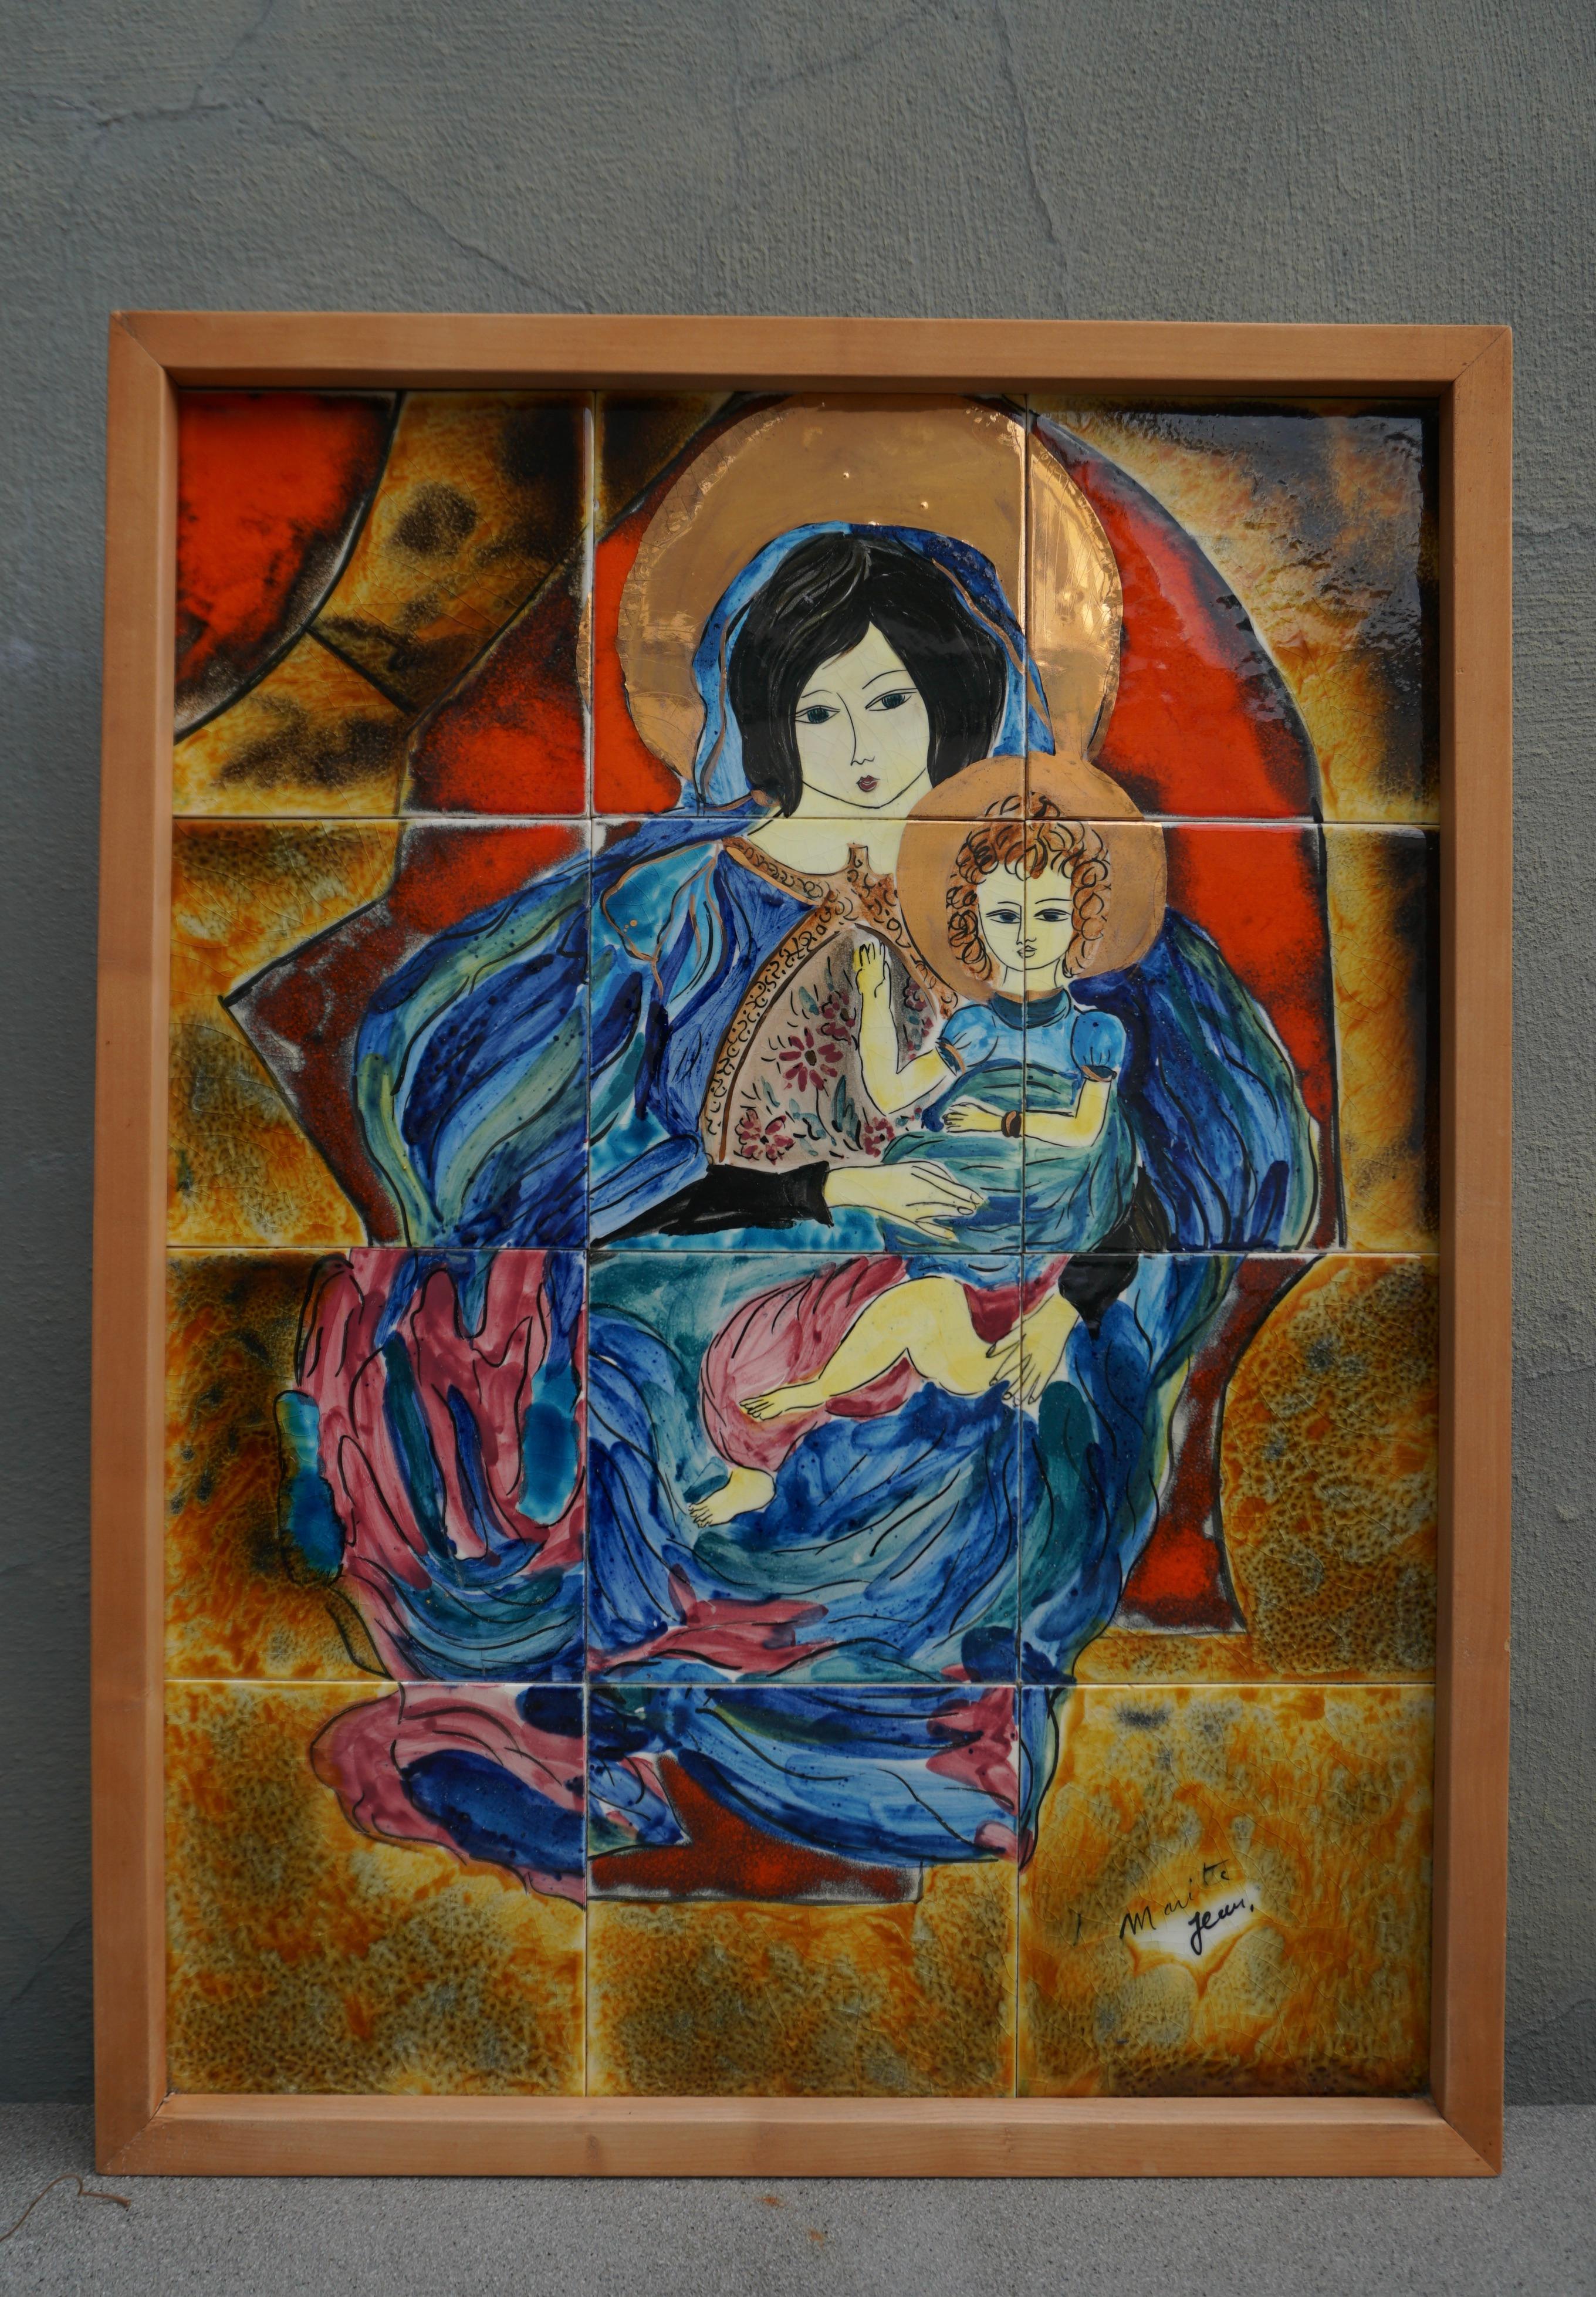 Magnifique représentation colorée et tendre de la Vierge et de l'enfant en céramique.
Signature illisible.

Largeur 19,2